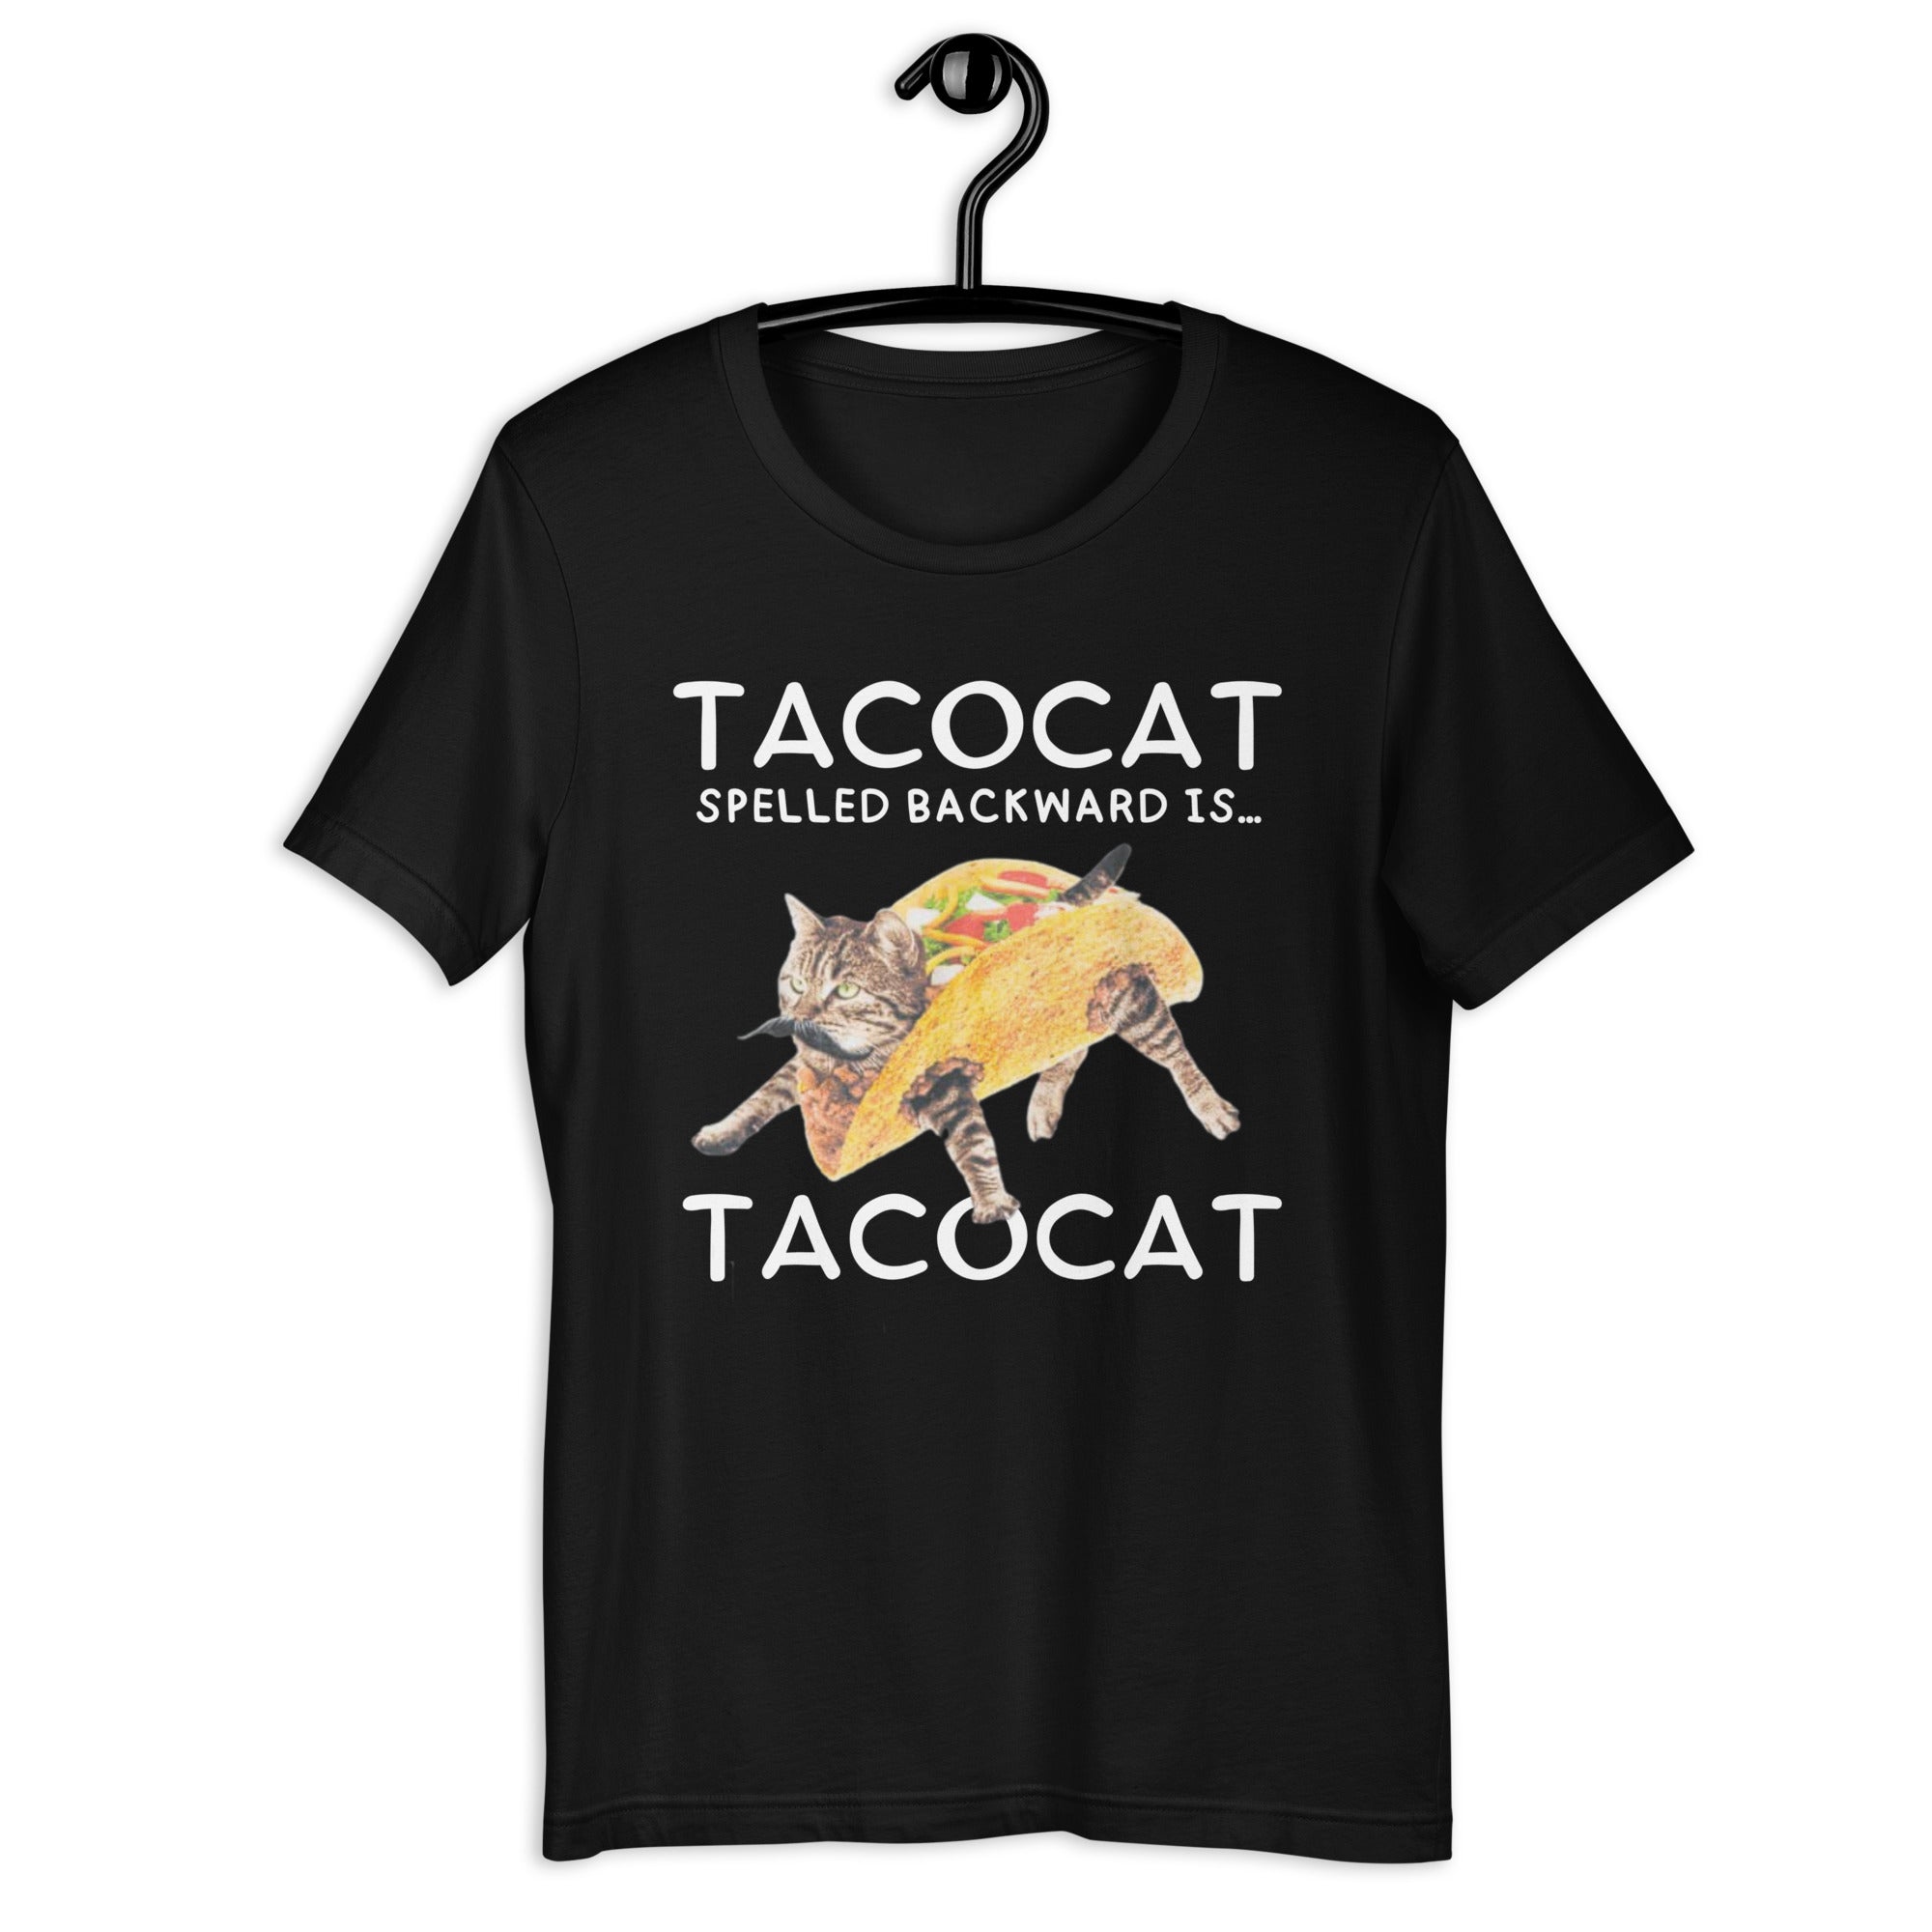 Taco Cat shirt